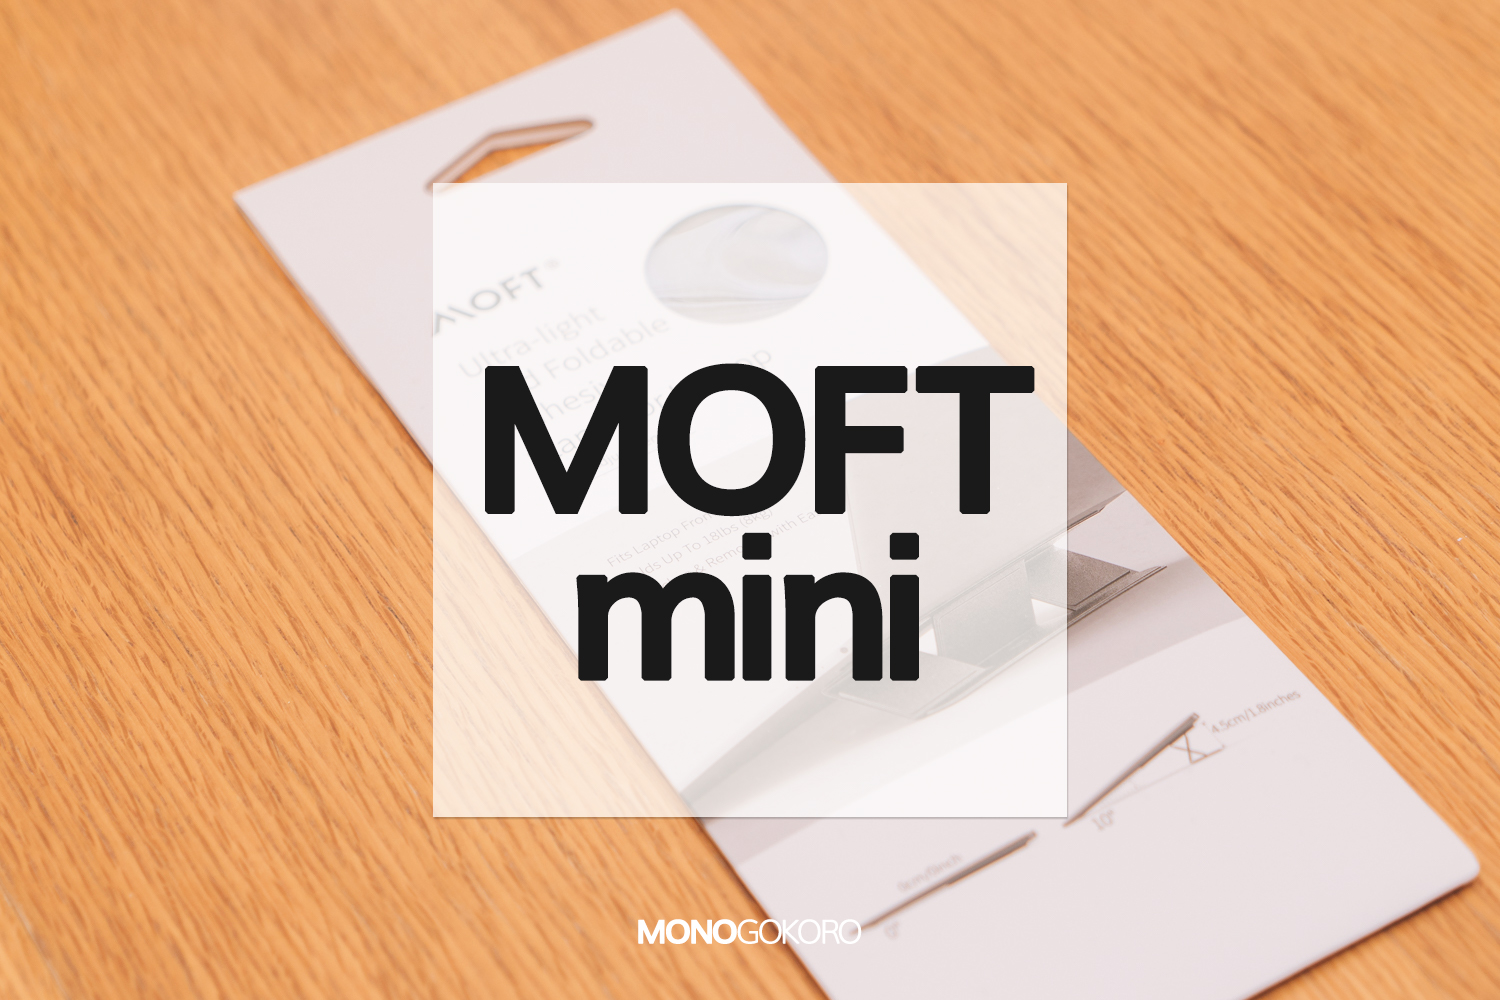 世界最薄クラスの貼り付けるノートパソコンスタンド「MOFT mini」